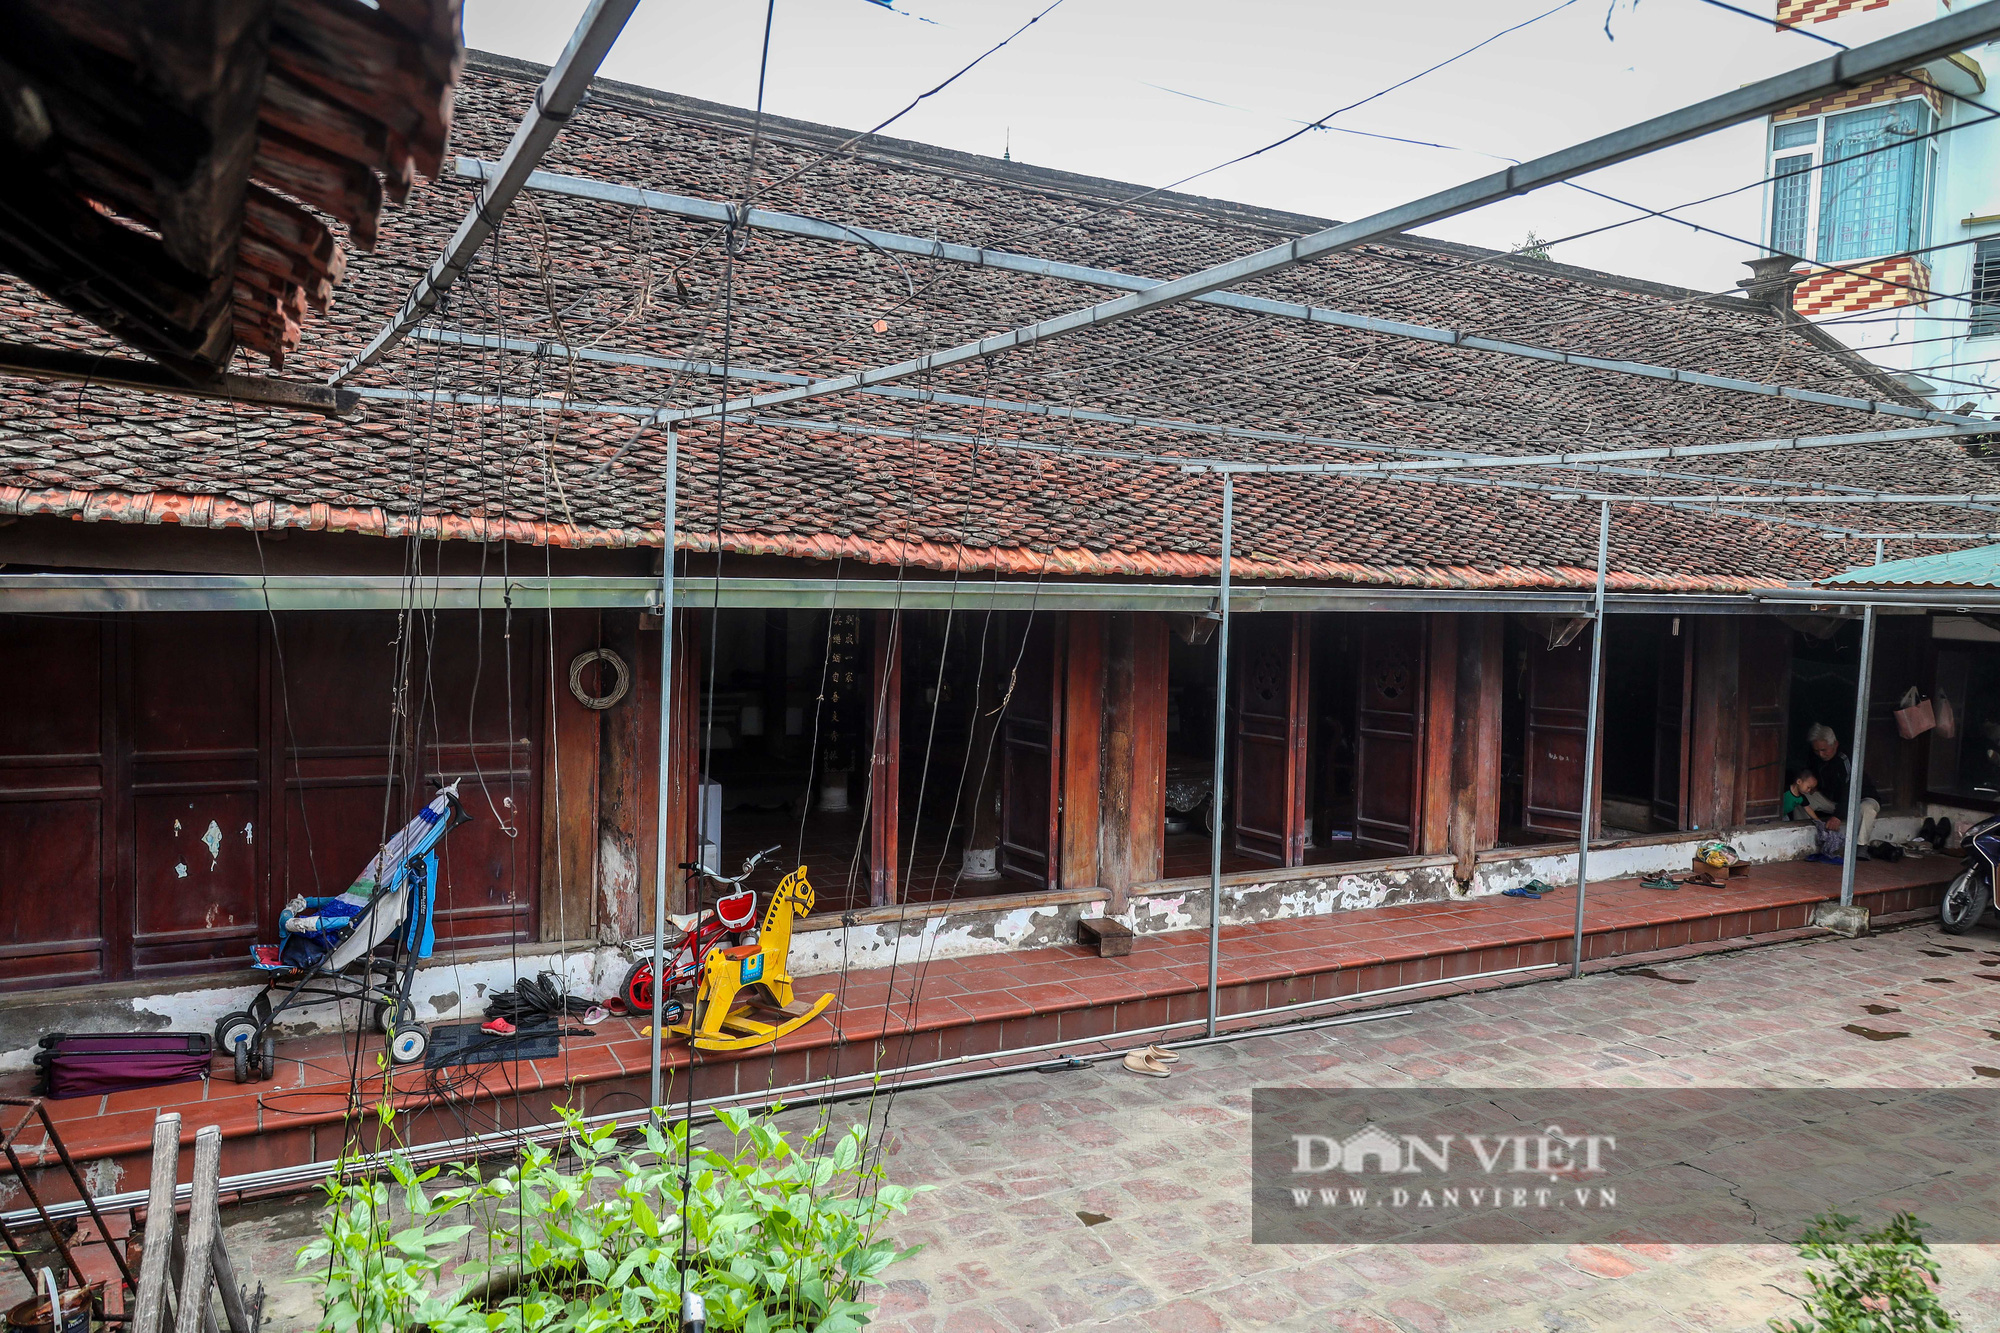 Kỳ lạ ngôi nhà xây mất 1 đêm, hơn 300 năm vẫn vững chãi ở Hà Nội - Ảnh 2.